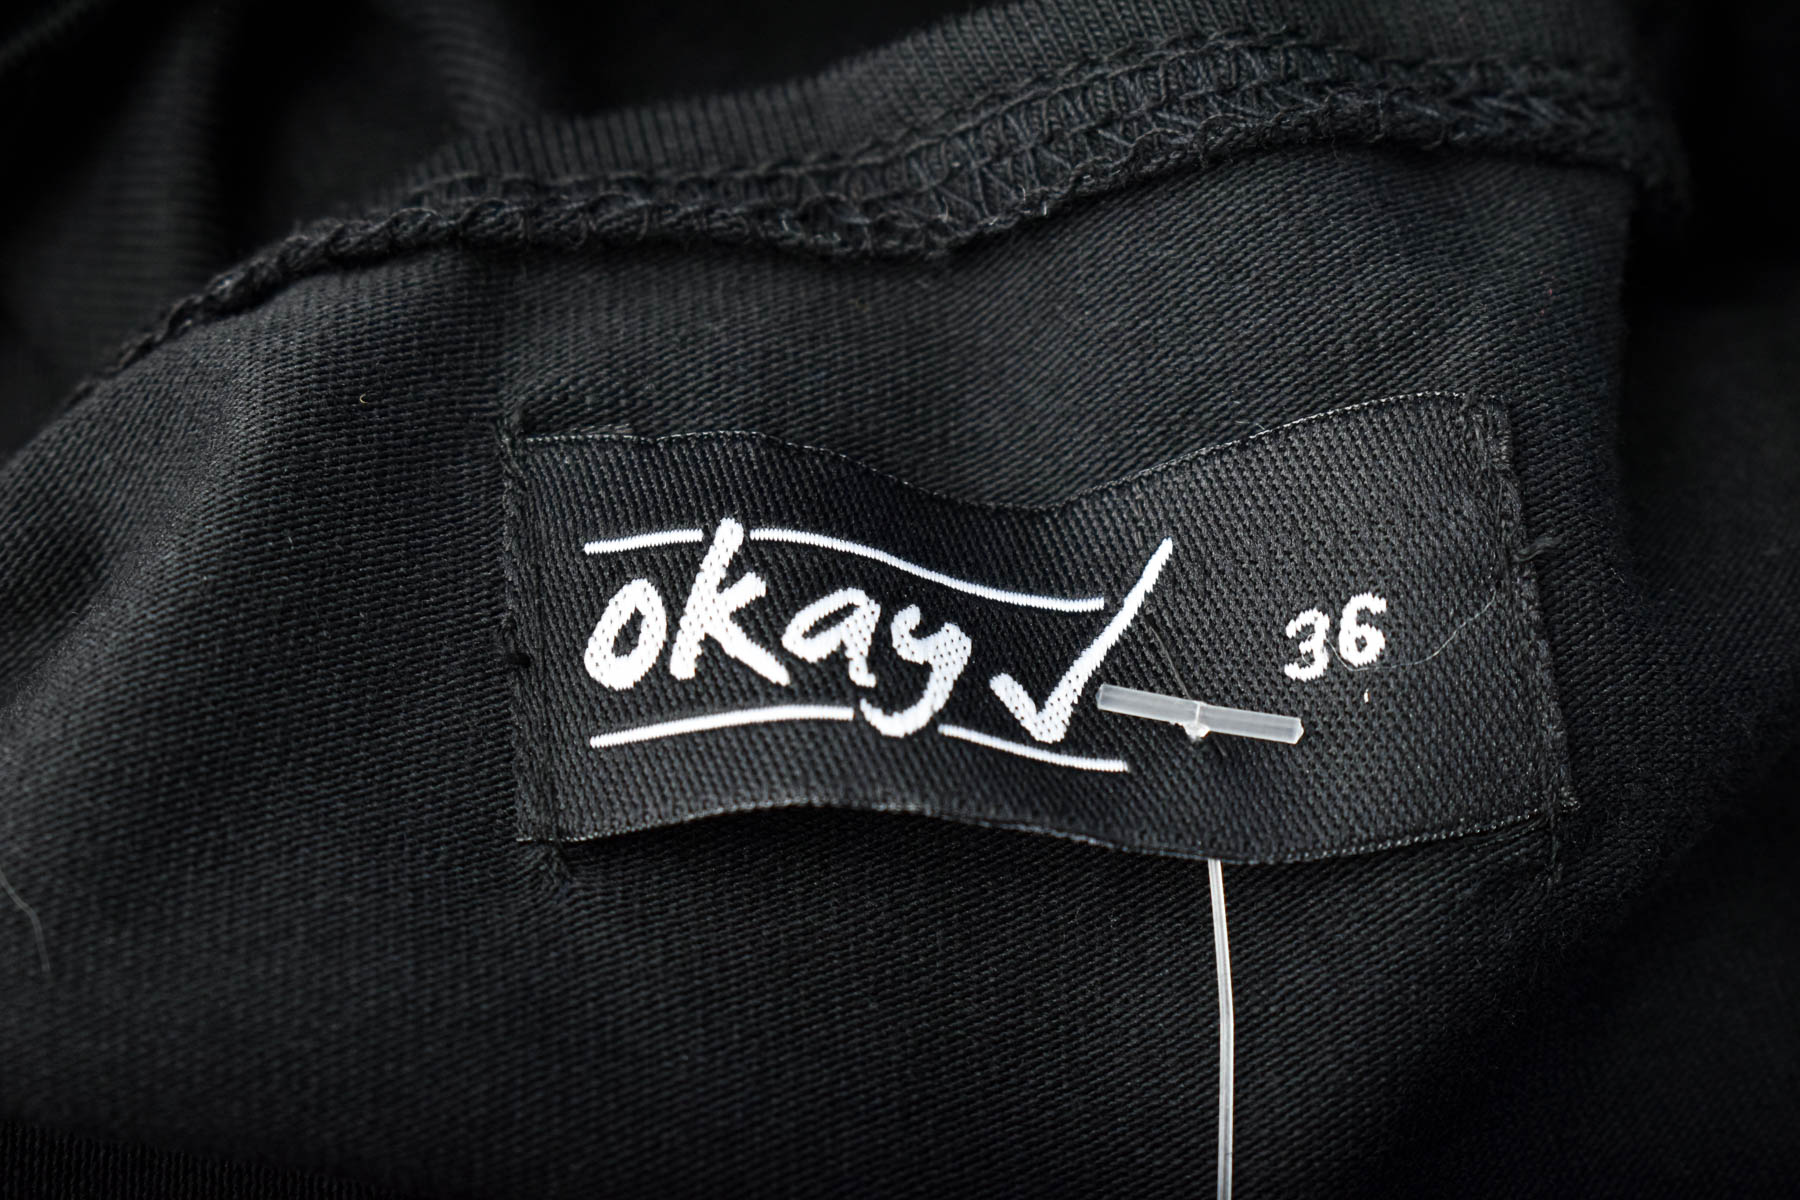 Dress - Okay - 2